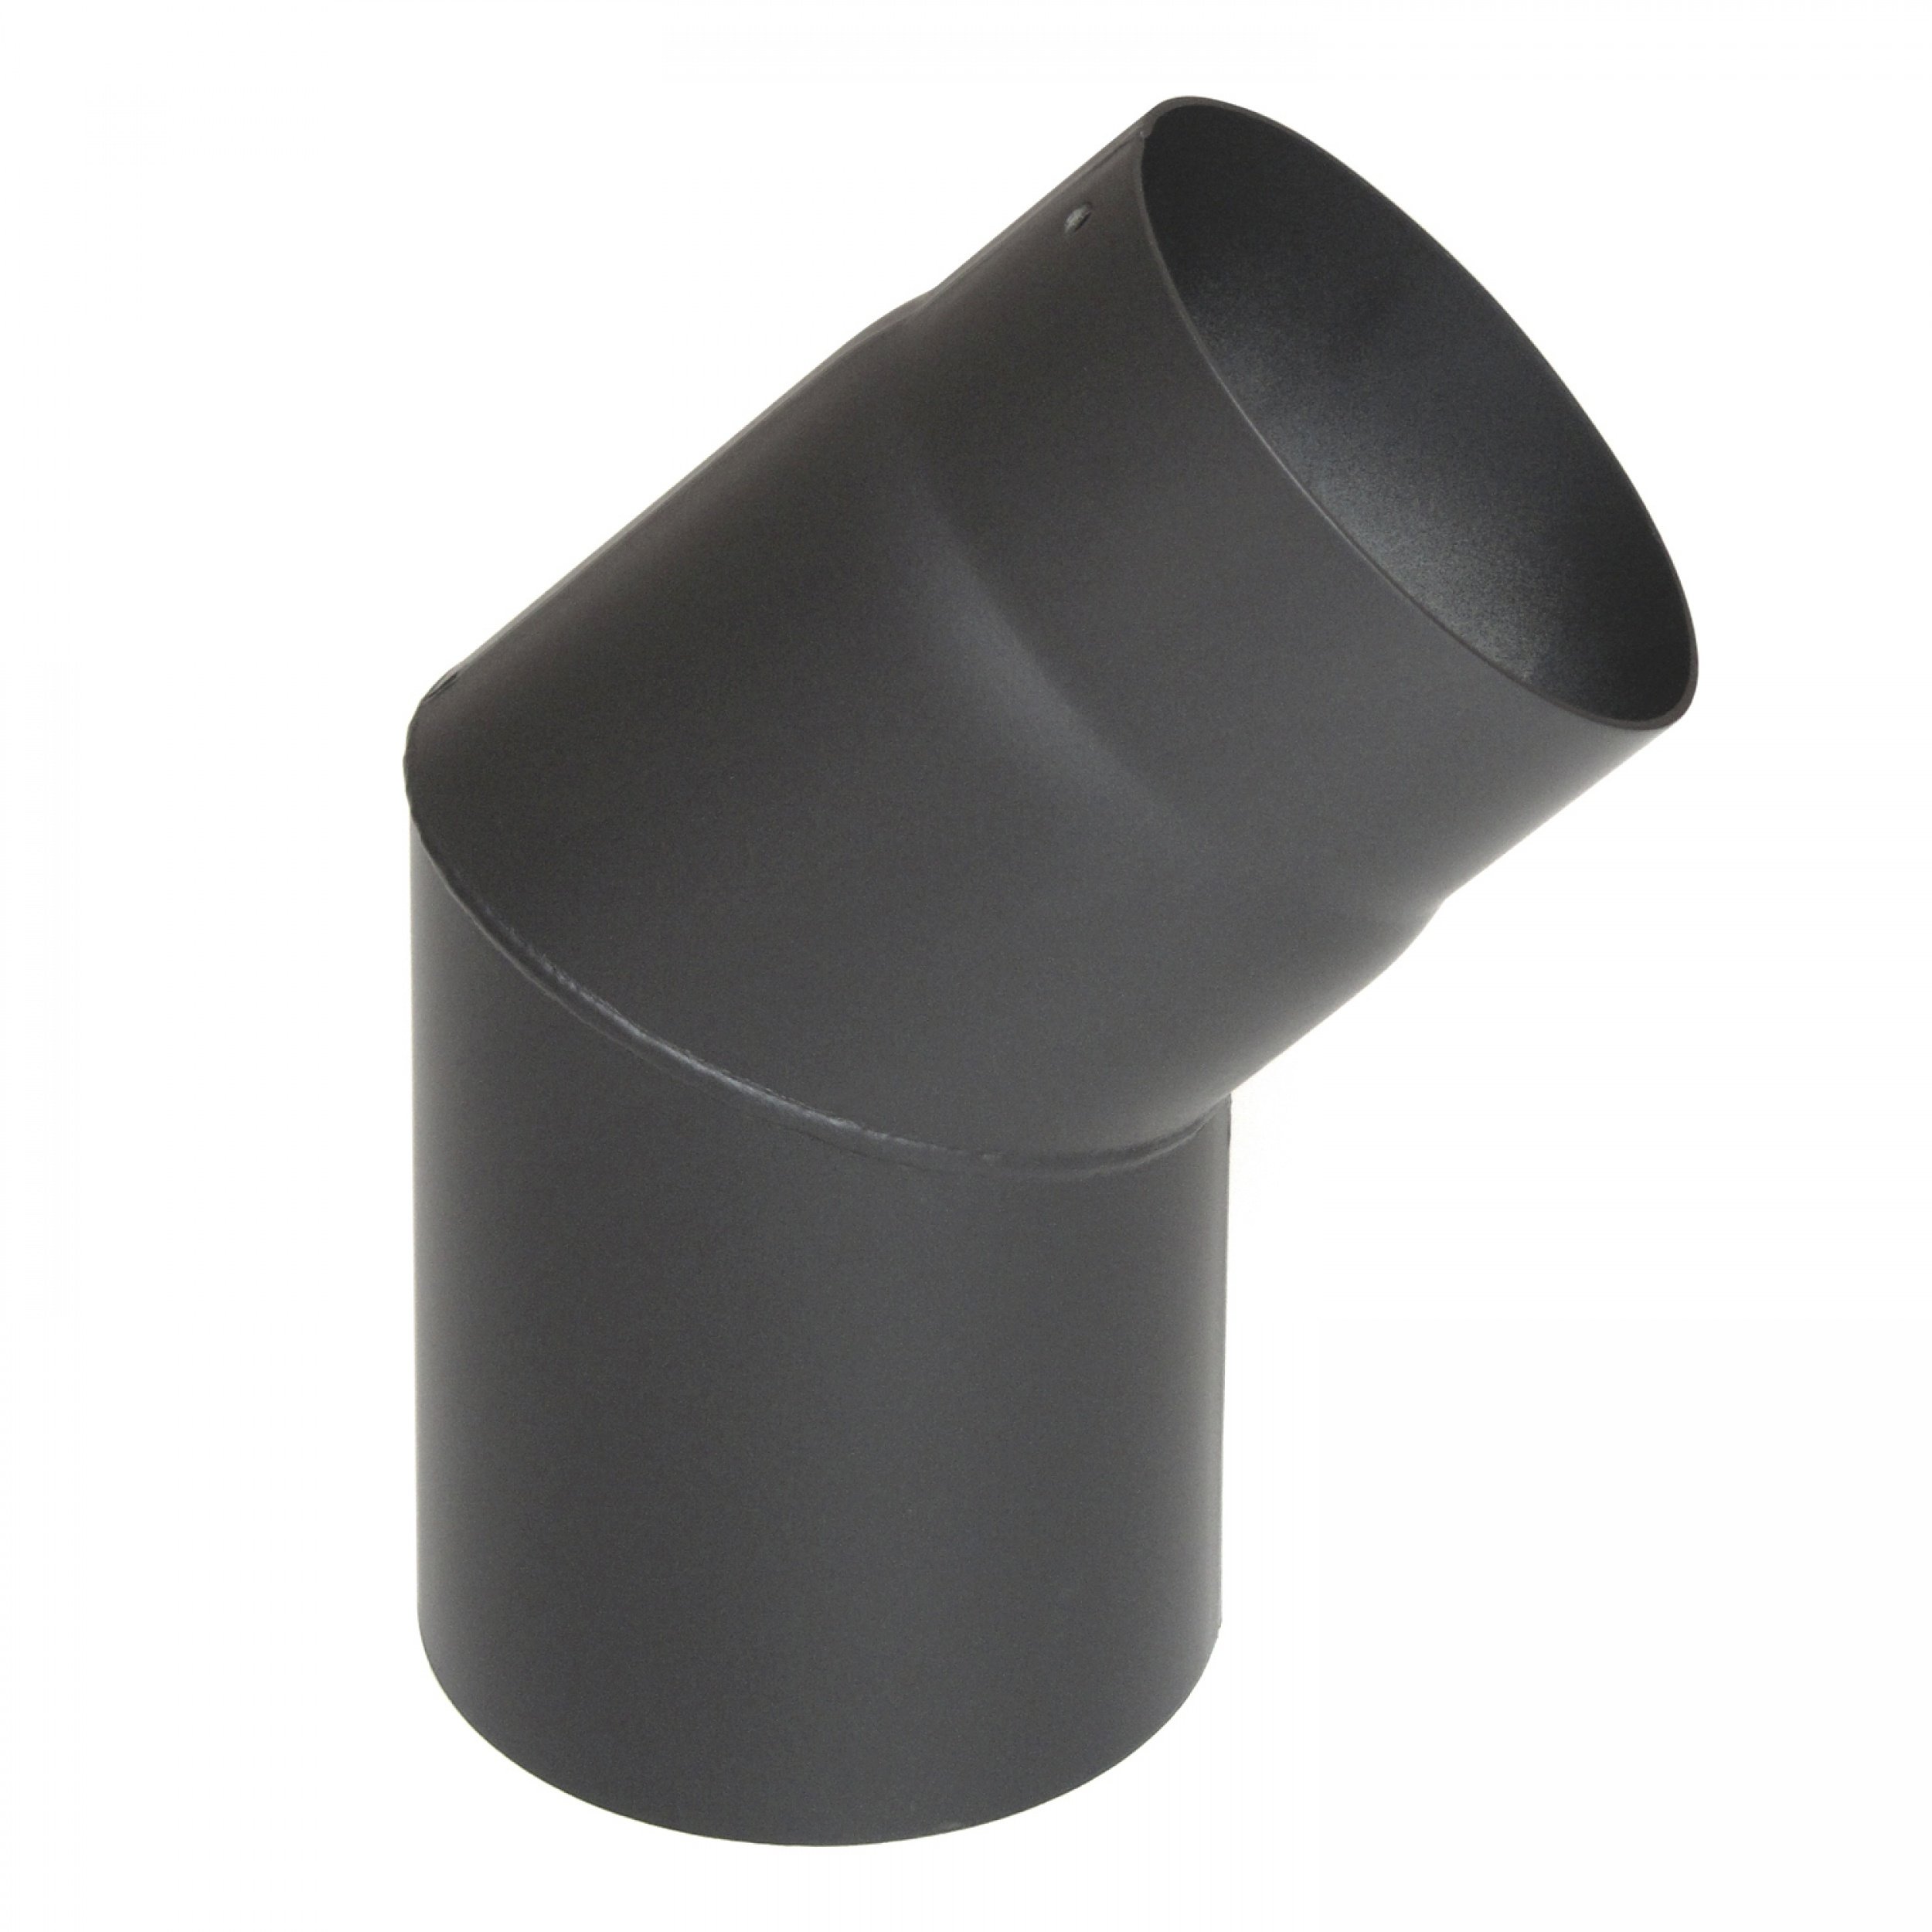 raik Rauchrohrbogen/Ofenrohrbogen 45° 2-teilig 120 mm Durchmesser ohne Reinigungsöffnung Stahlblech 2 mm Gussgrau SH027-120-gg